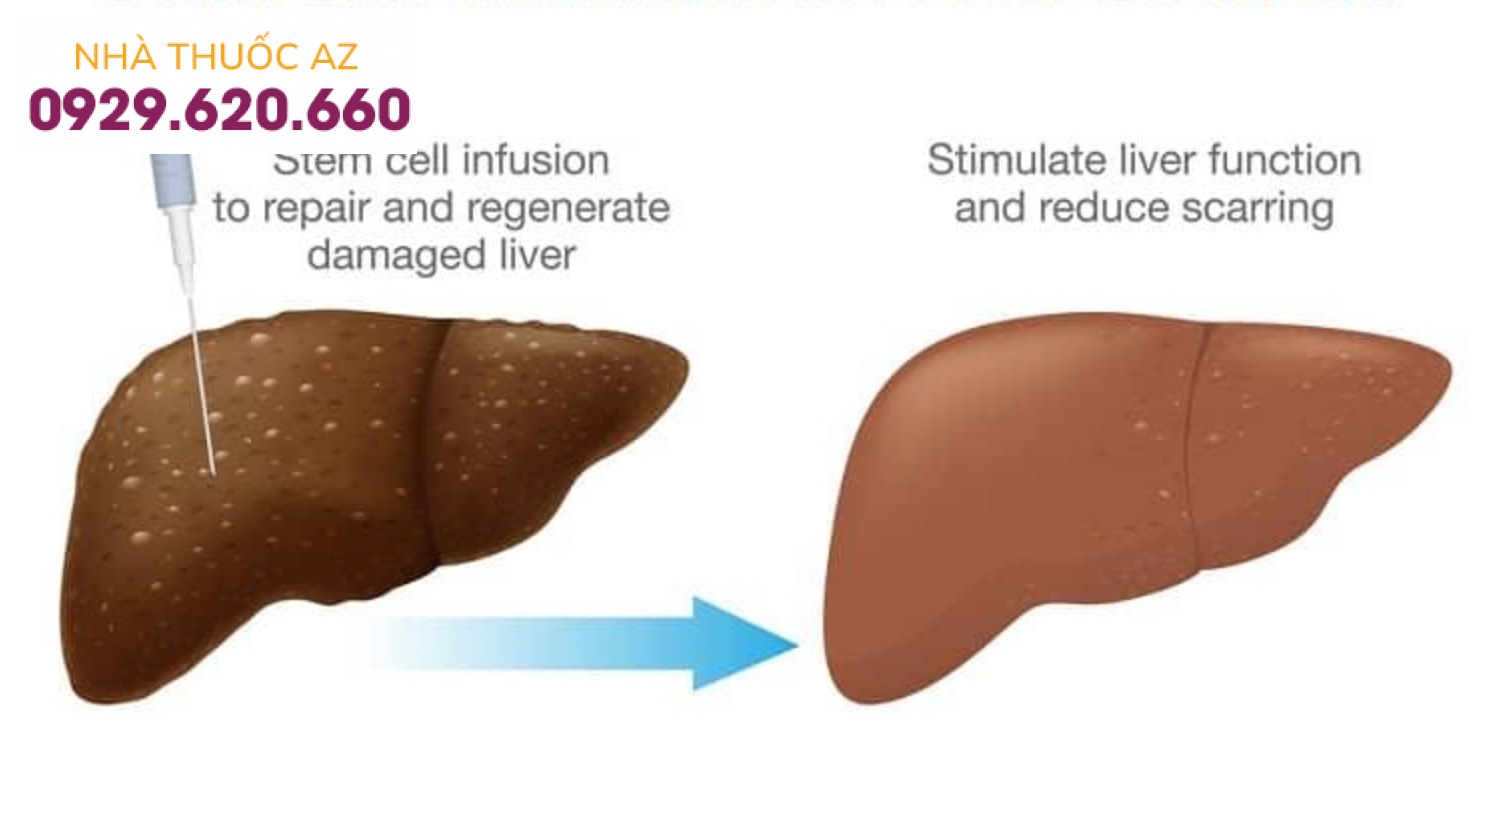 Ghép tế bào gốc cho bệnh nhân bị xơ gan